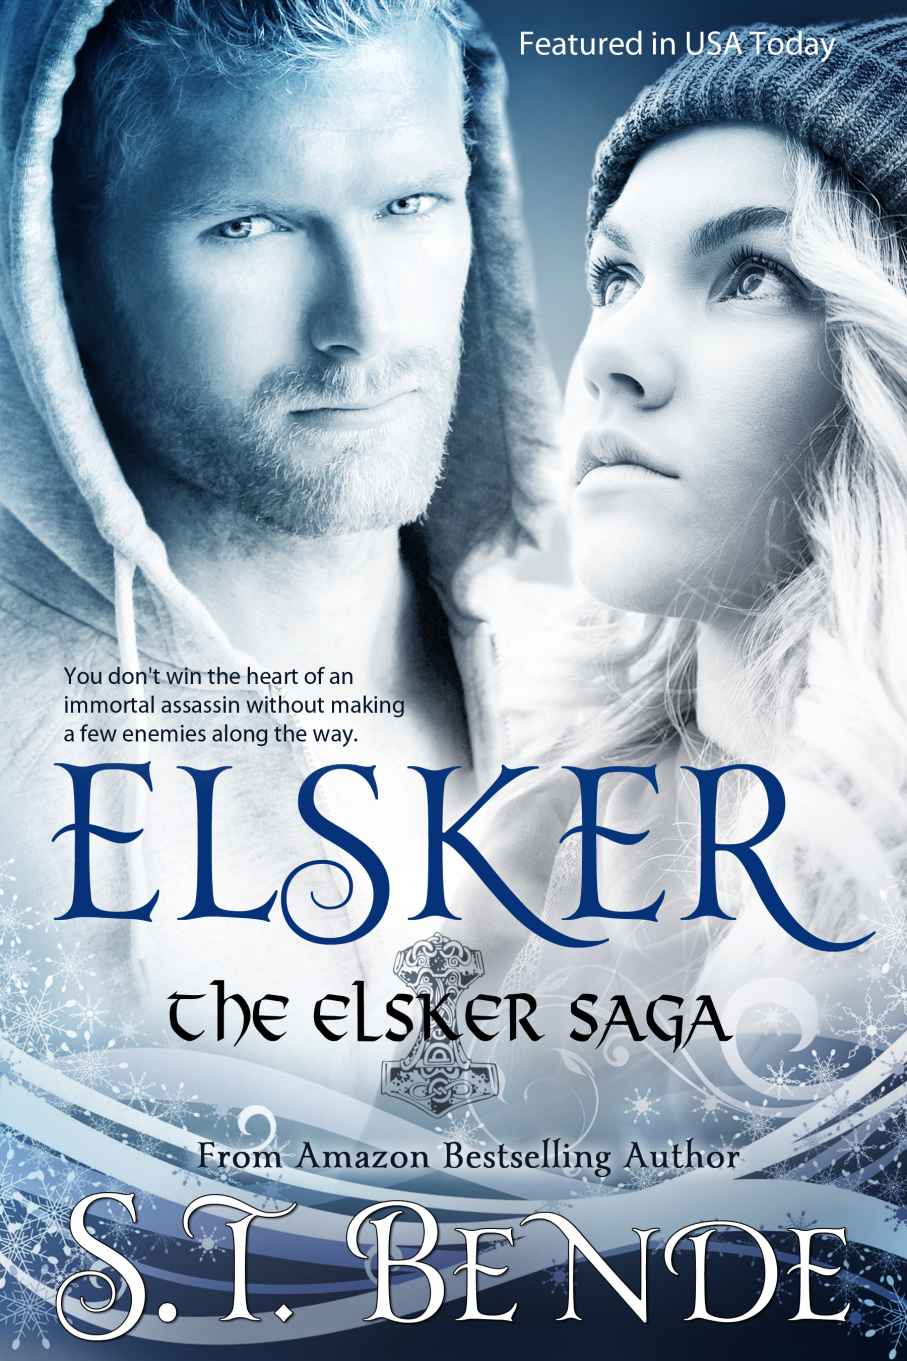 Elsker - The Elsker Saga by S.T. Bende